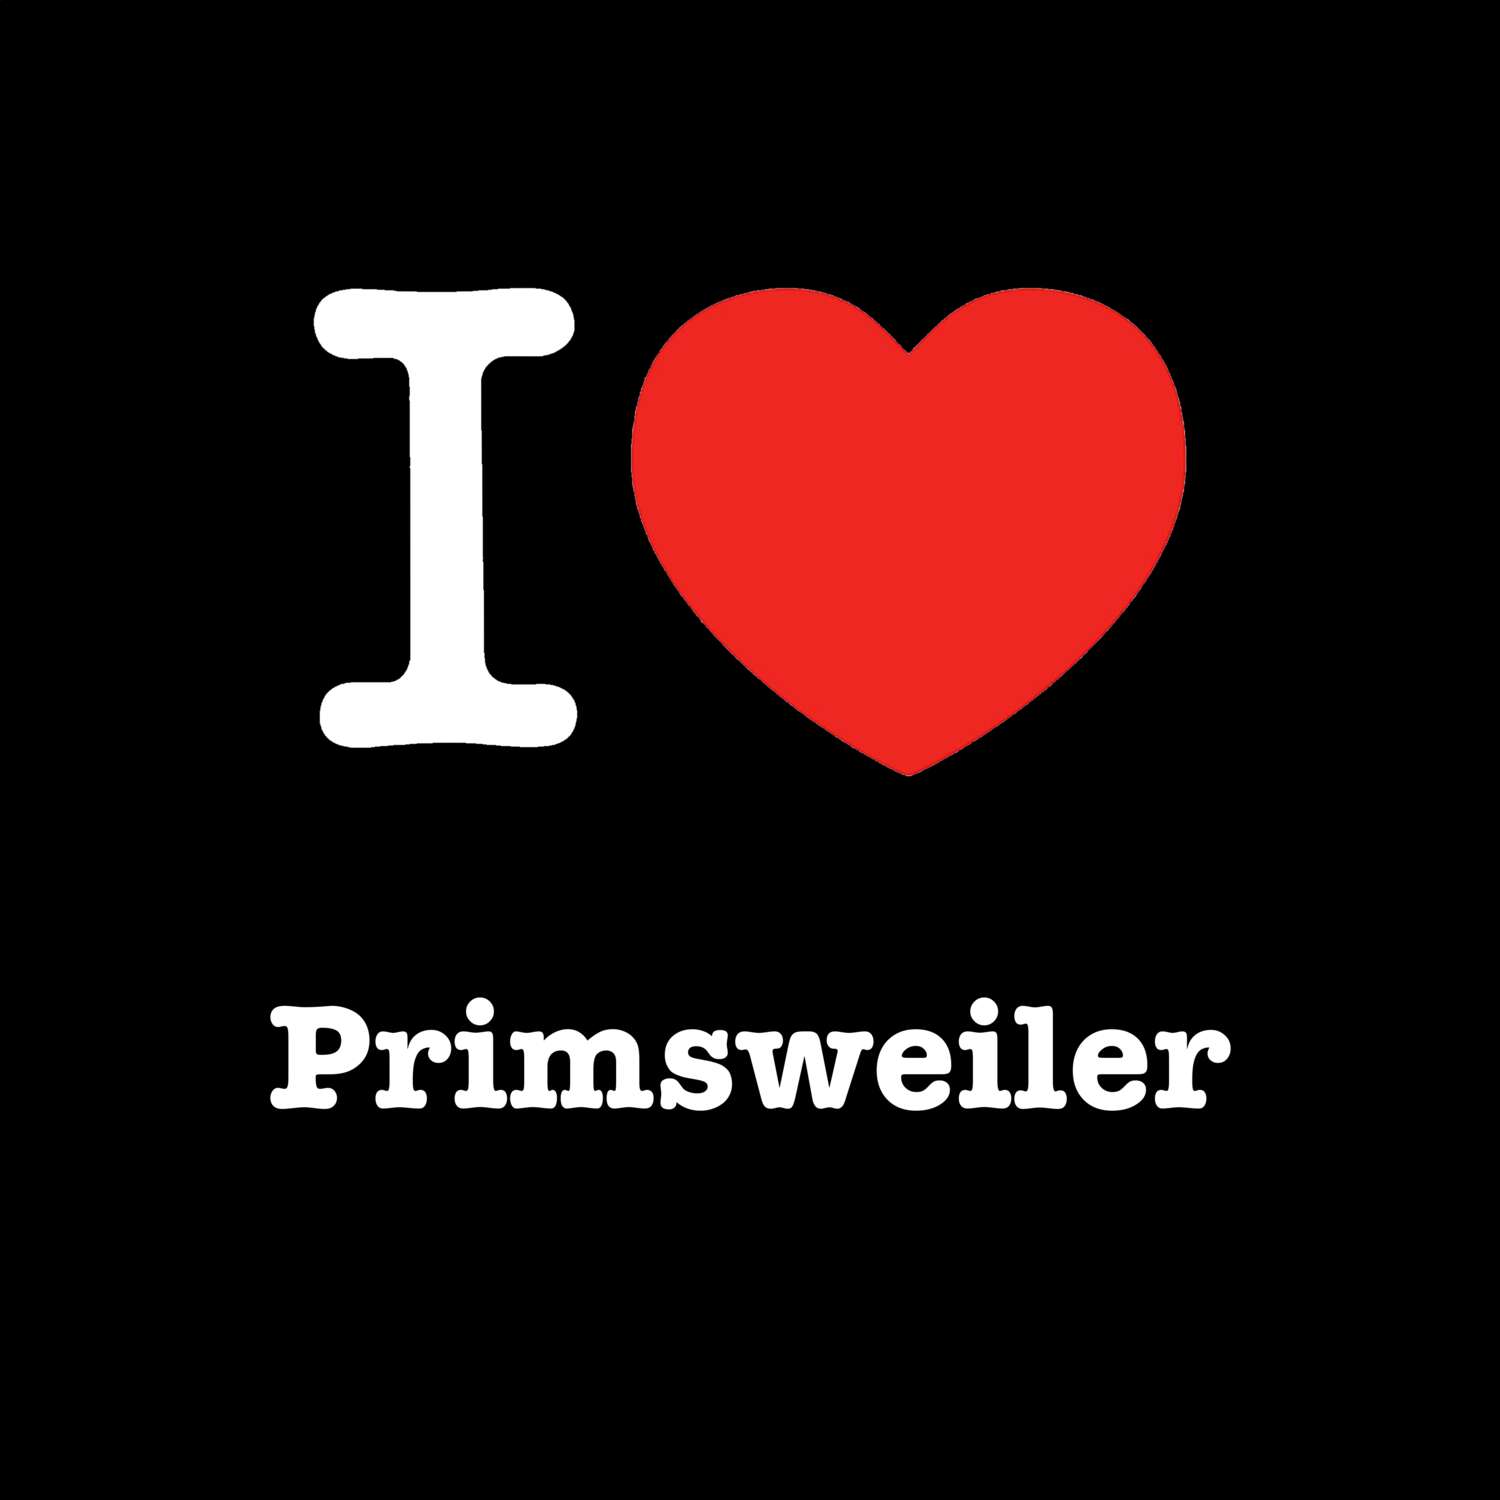 Primsweiler T-Shirt »I love«